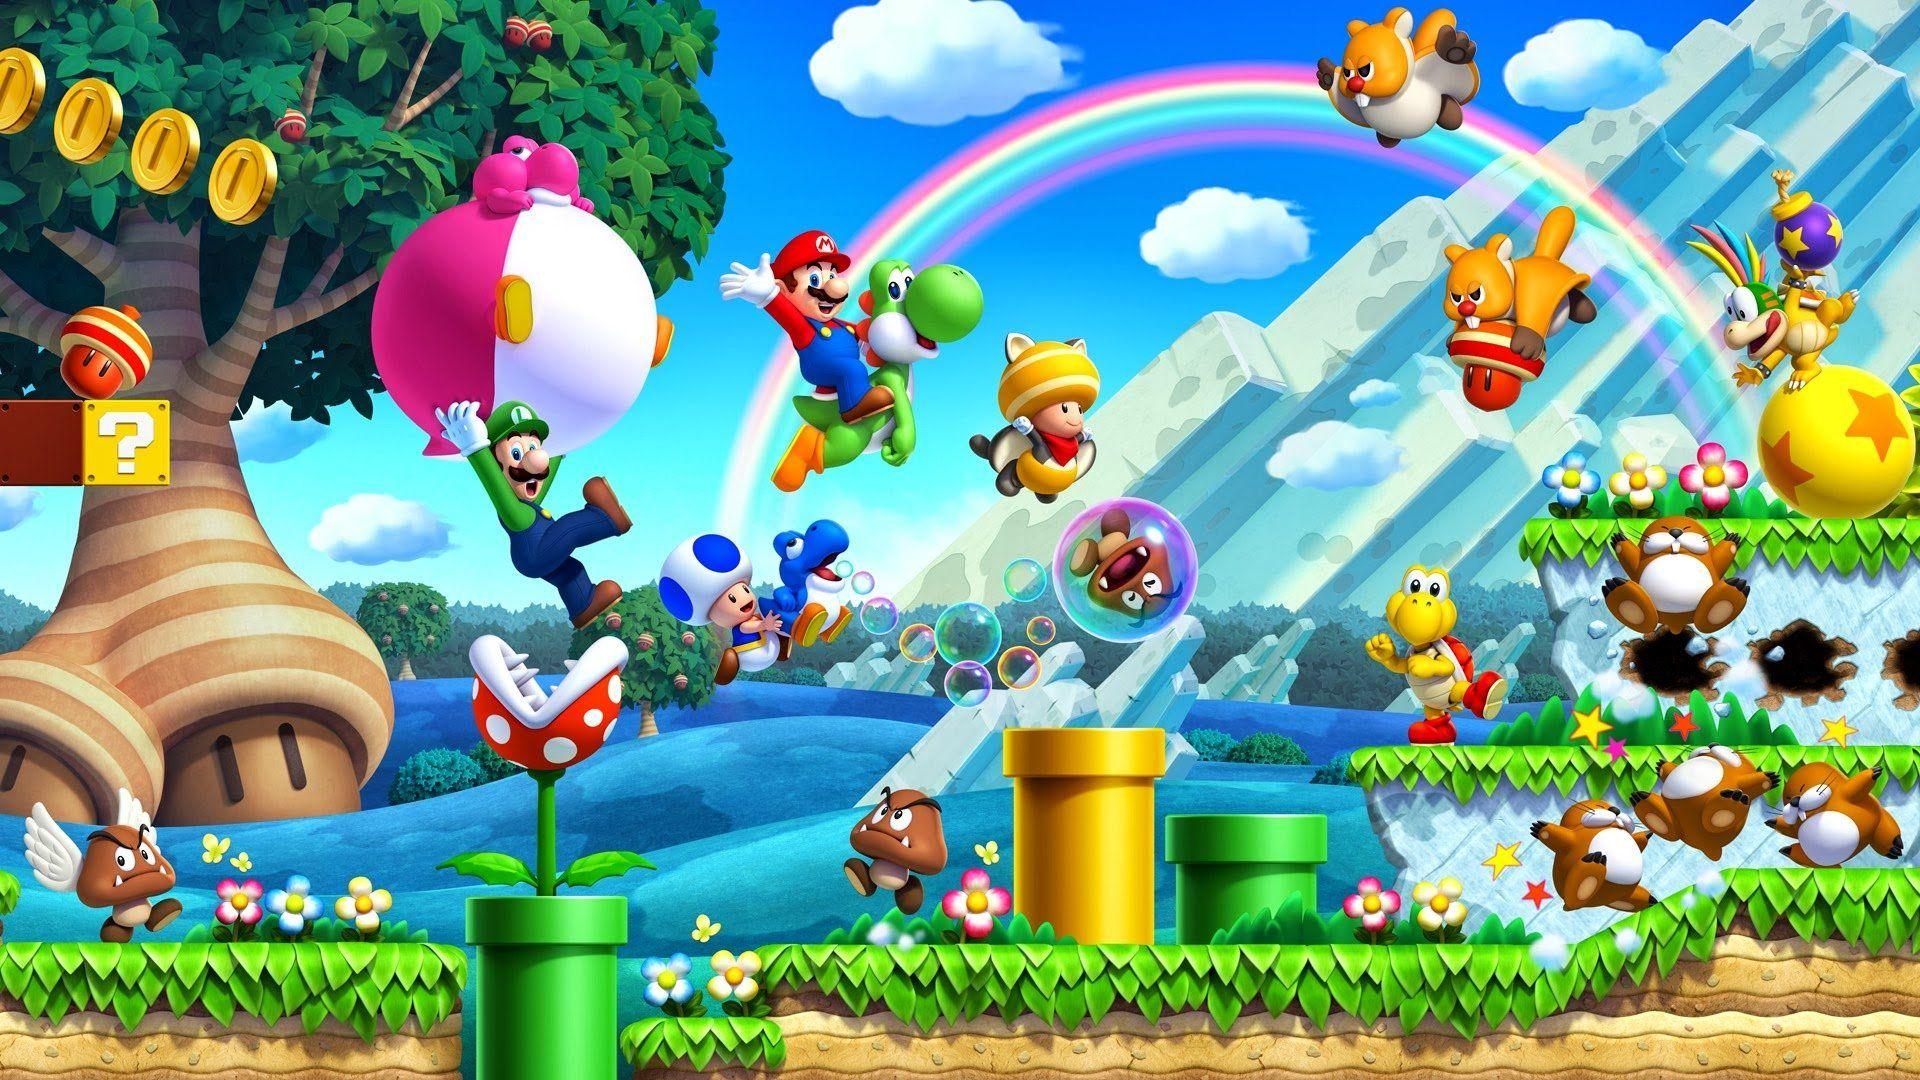 Mario Bros Wallpapers Top Free Mario Bros Backgrounds Wallpaperaccess